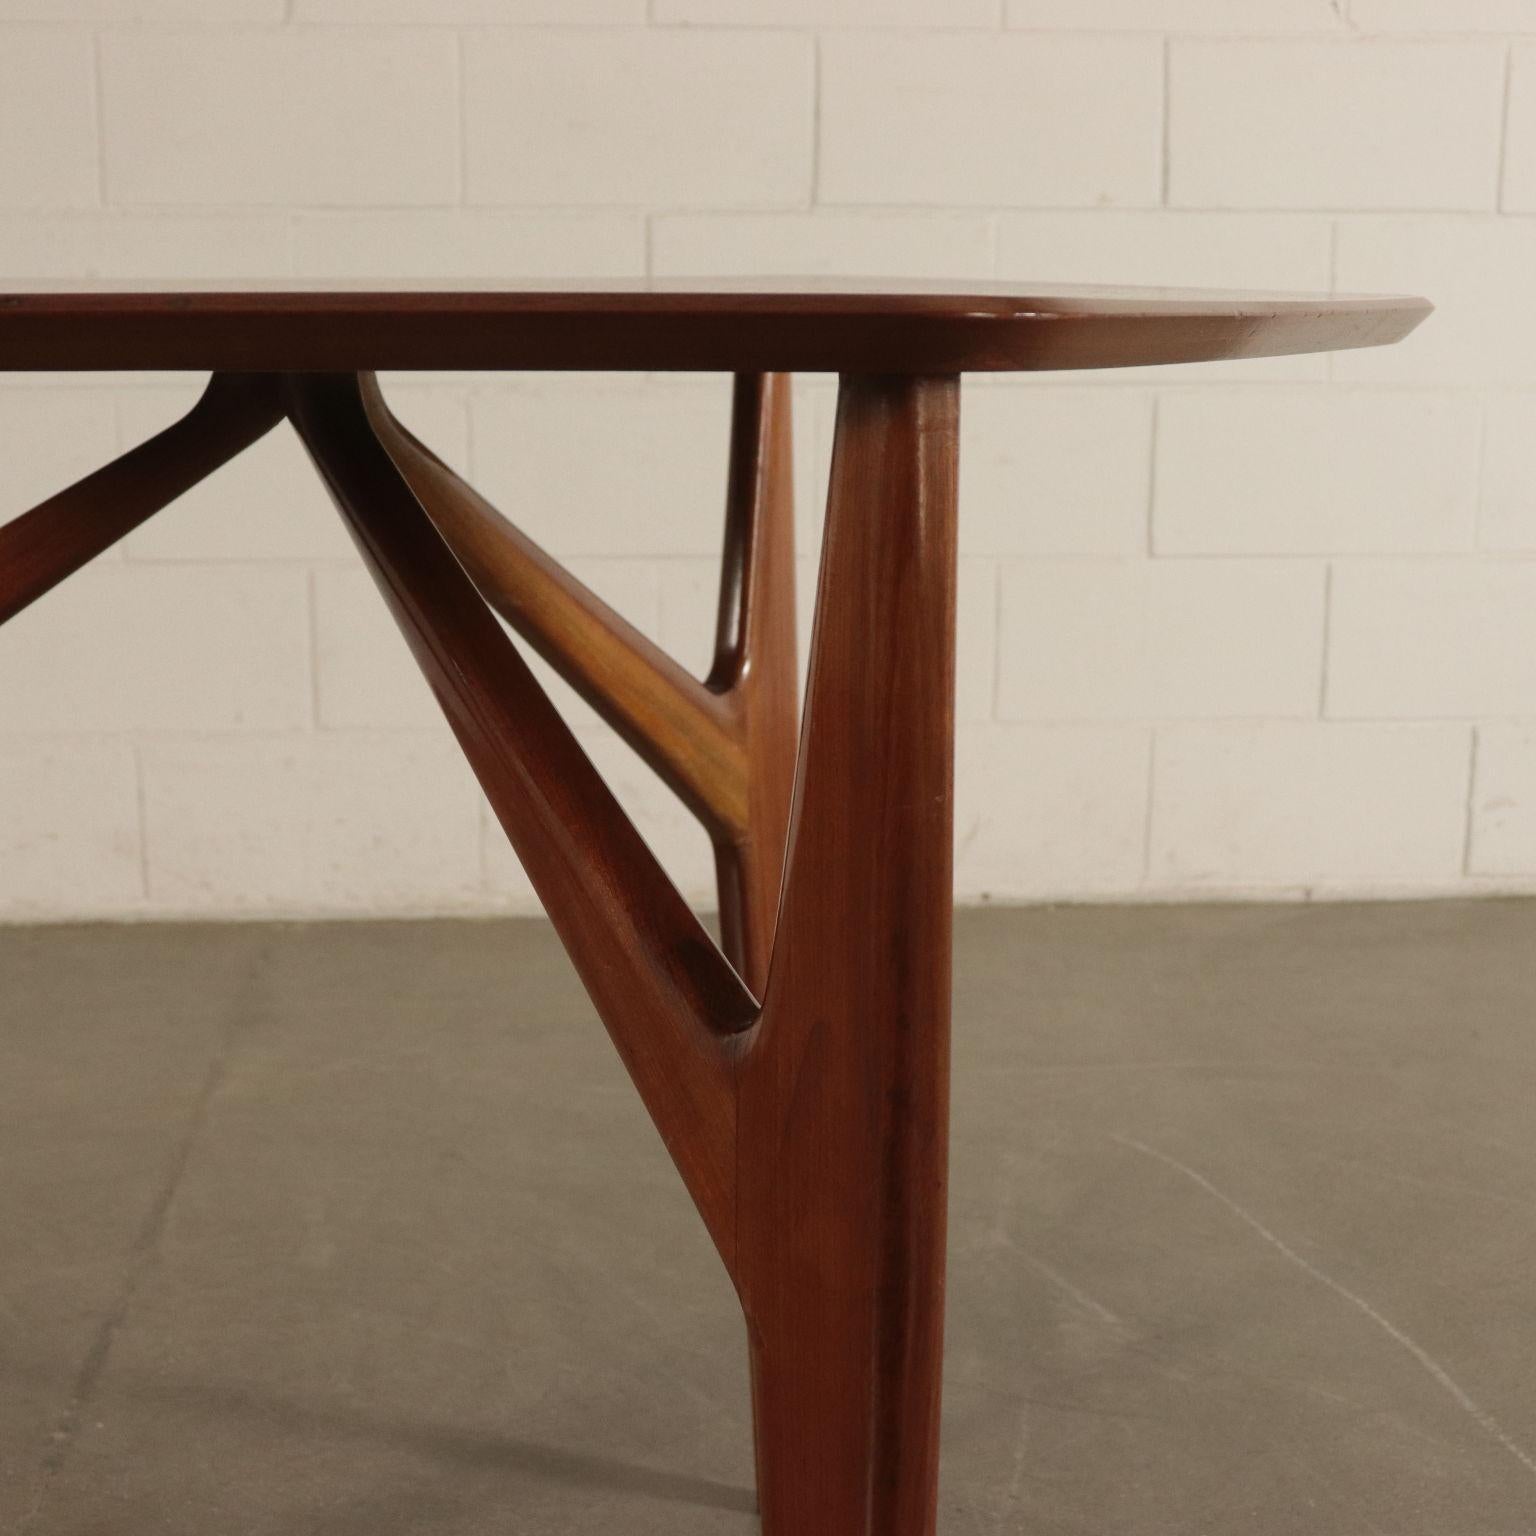 Table Mahogany Veneer and Solid Wood 1950s Italian Prodution 1